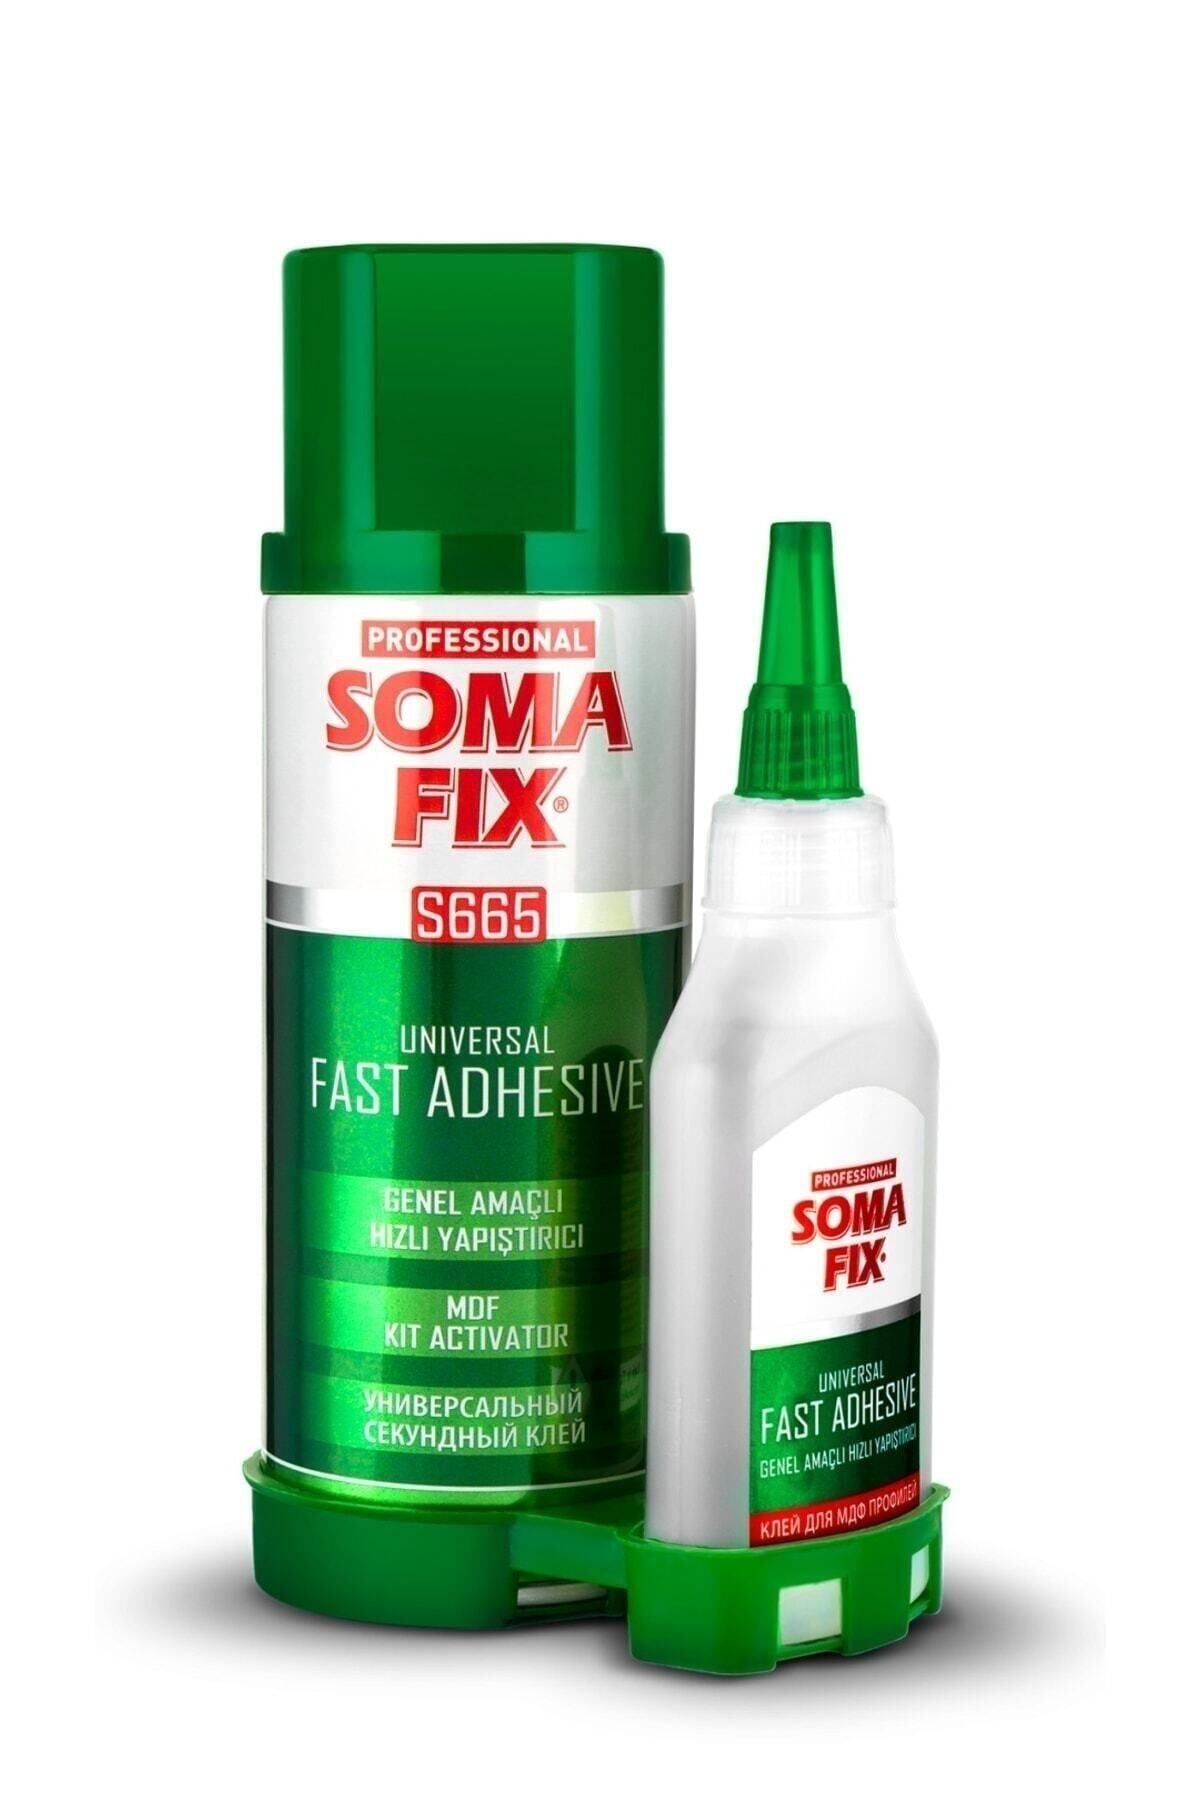 Somafix Genel Amaçlı Hızlı Yapıştırıcı 400 ml 100 gr